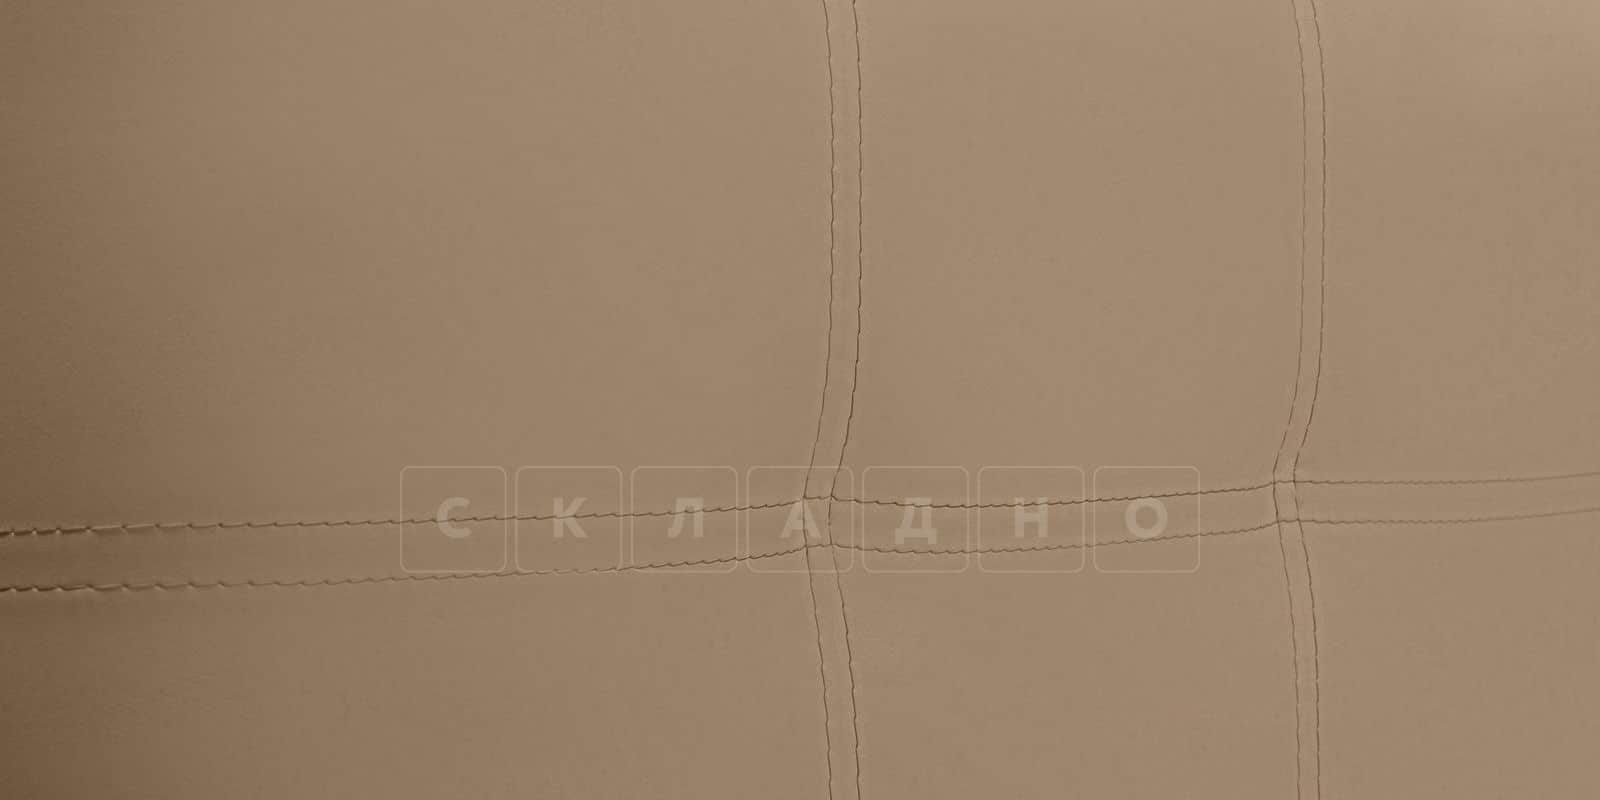 Мягкая кровать Афина 160 см экокожа темно-бежевого цвета фото 8 | интернет-магазин Складно